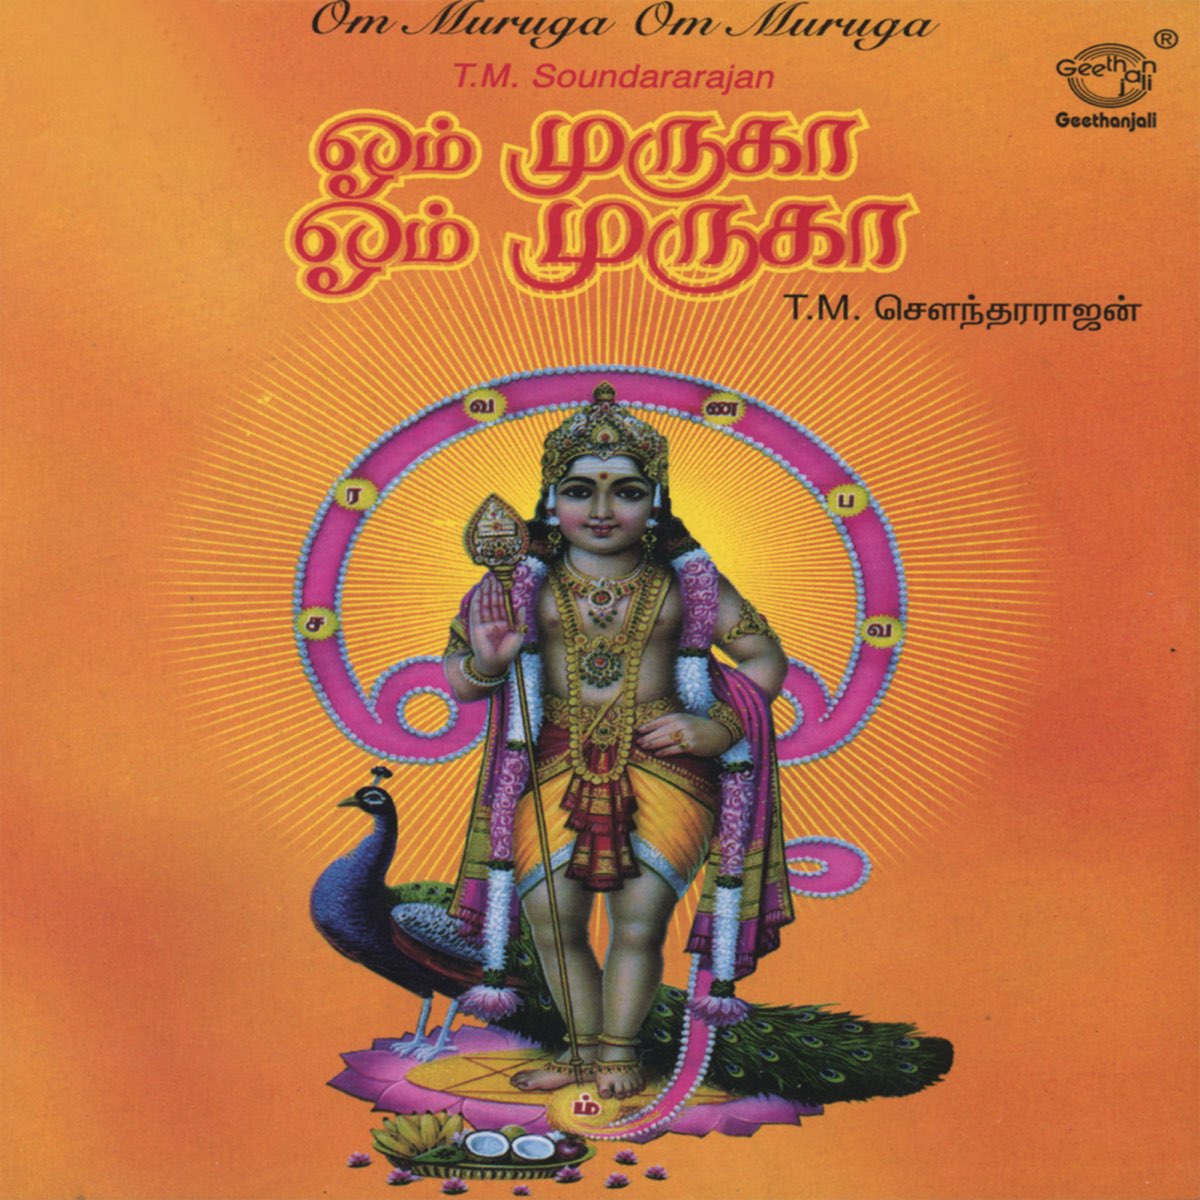 Om Muruga Om Muruga by T. M. Soundararajan on Apple Music